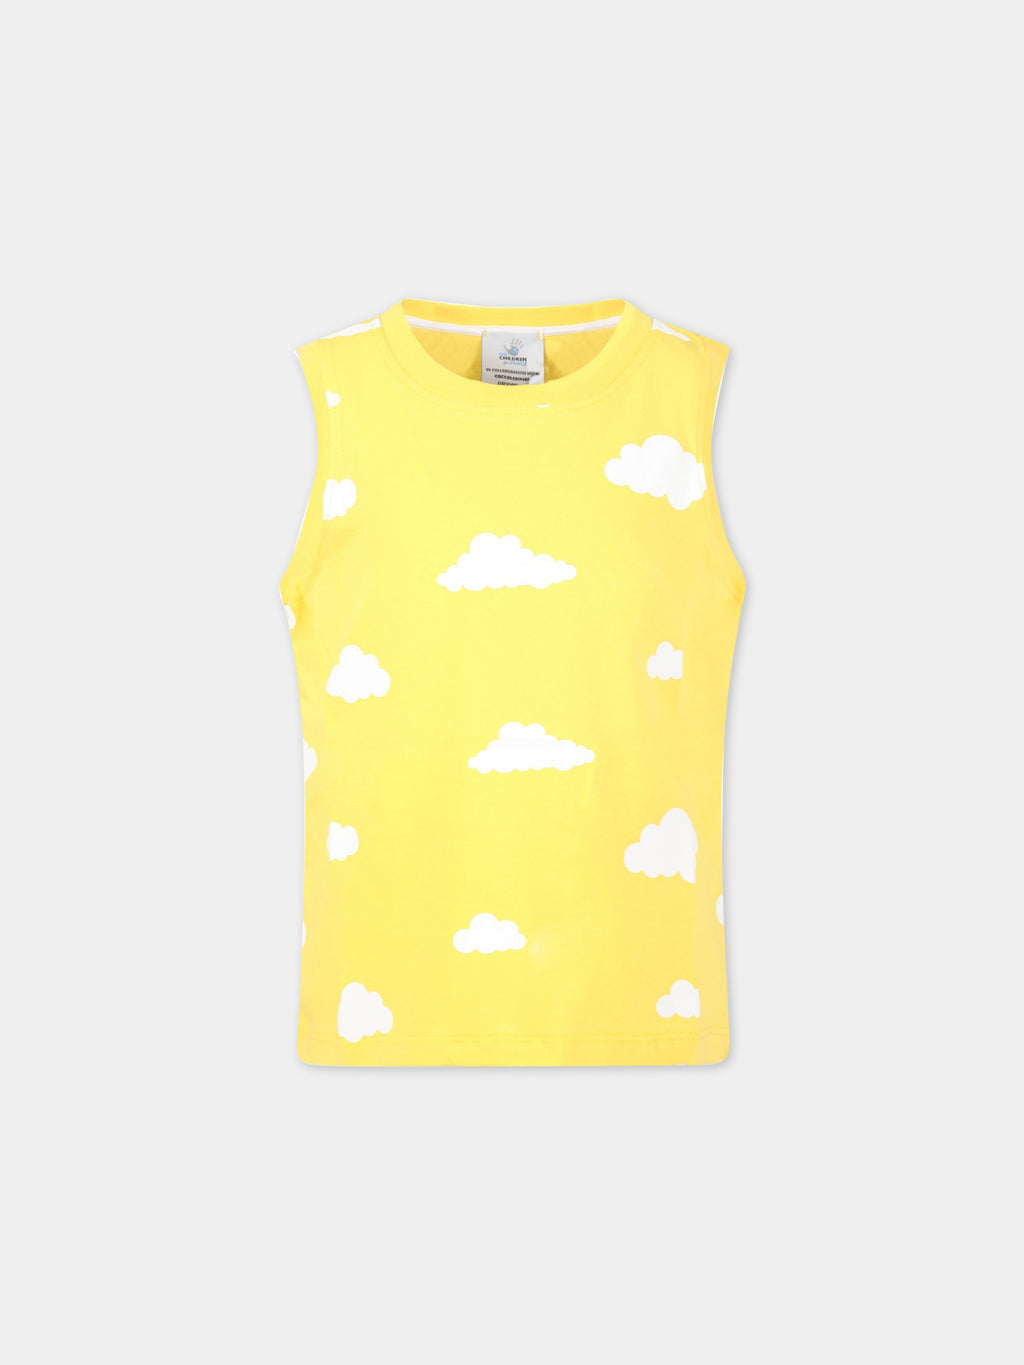 Débardeur jaune pour enfants avec nuages